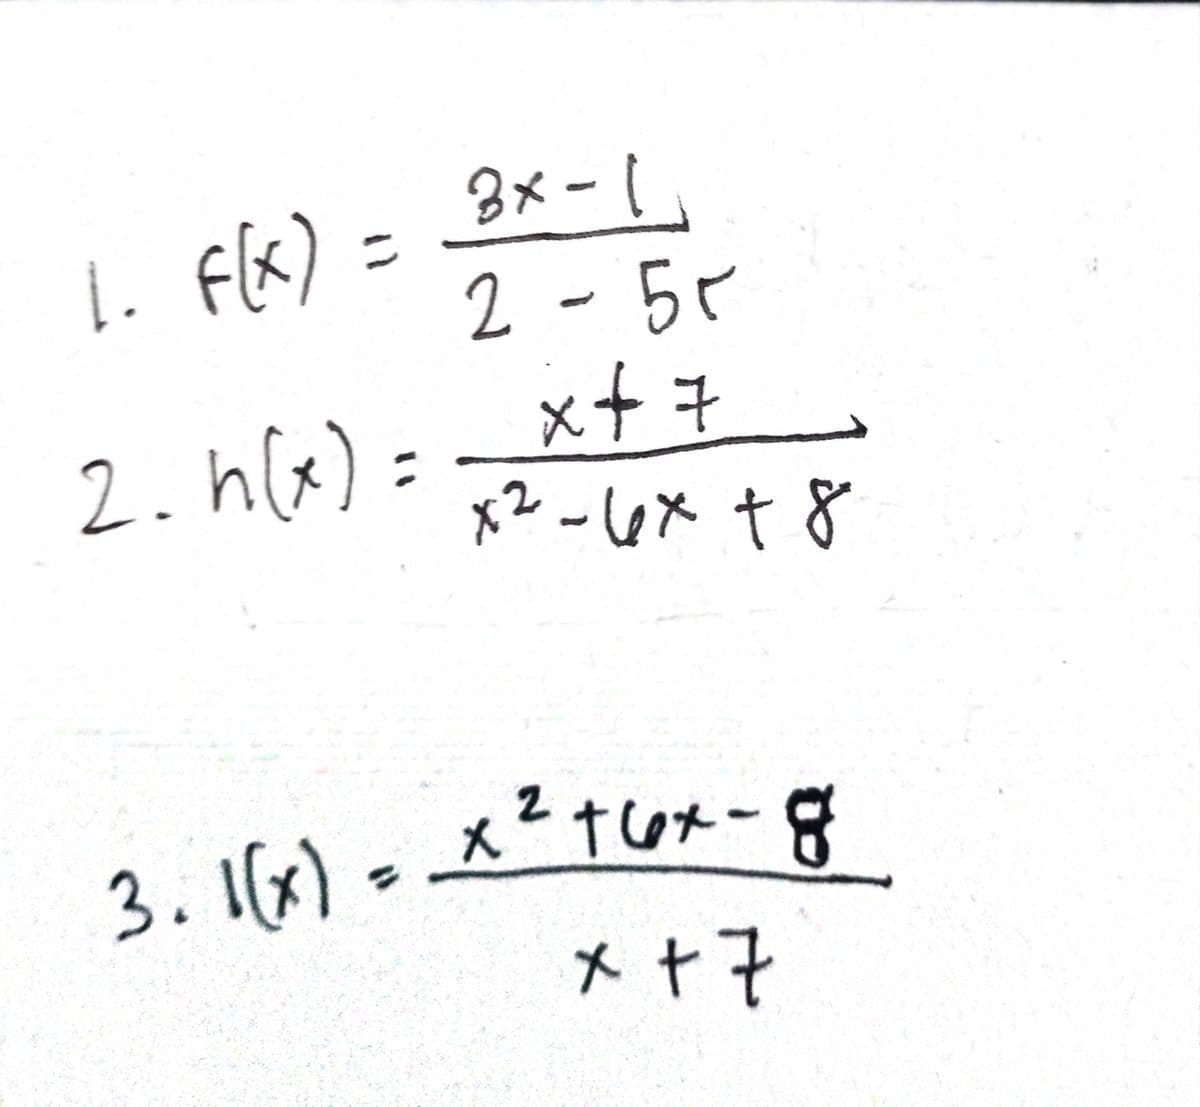 3メ-し」
2 -55
x+モ
x2 -6x + 8
1. flx) =
2.h(x):
3.16) - xtuxメー
メャ?
2
